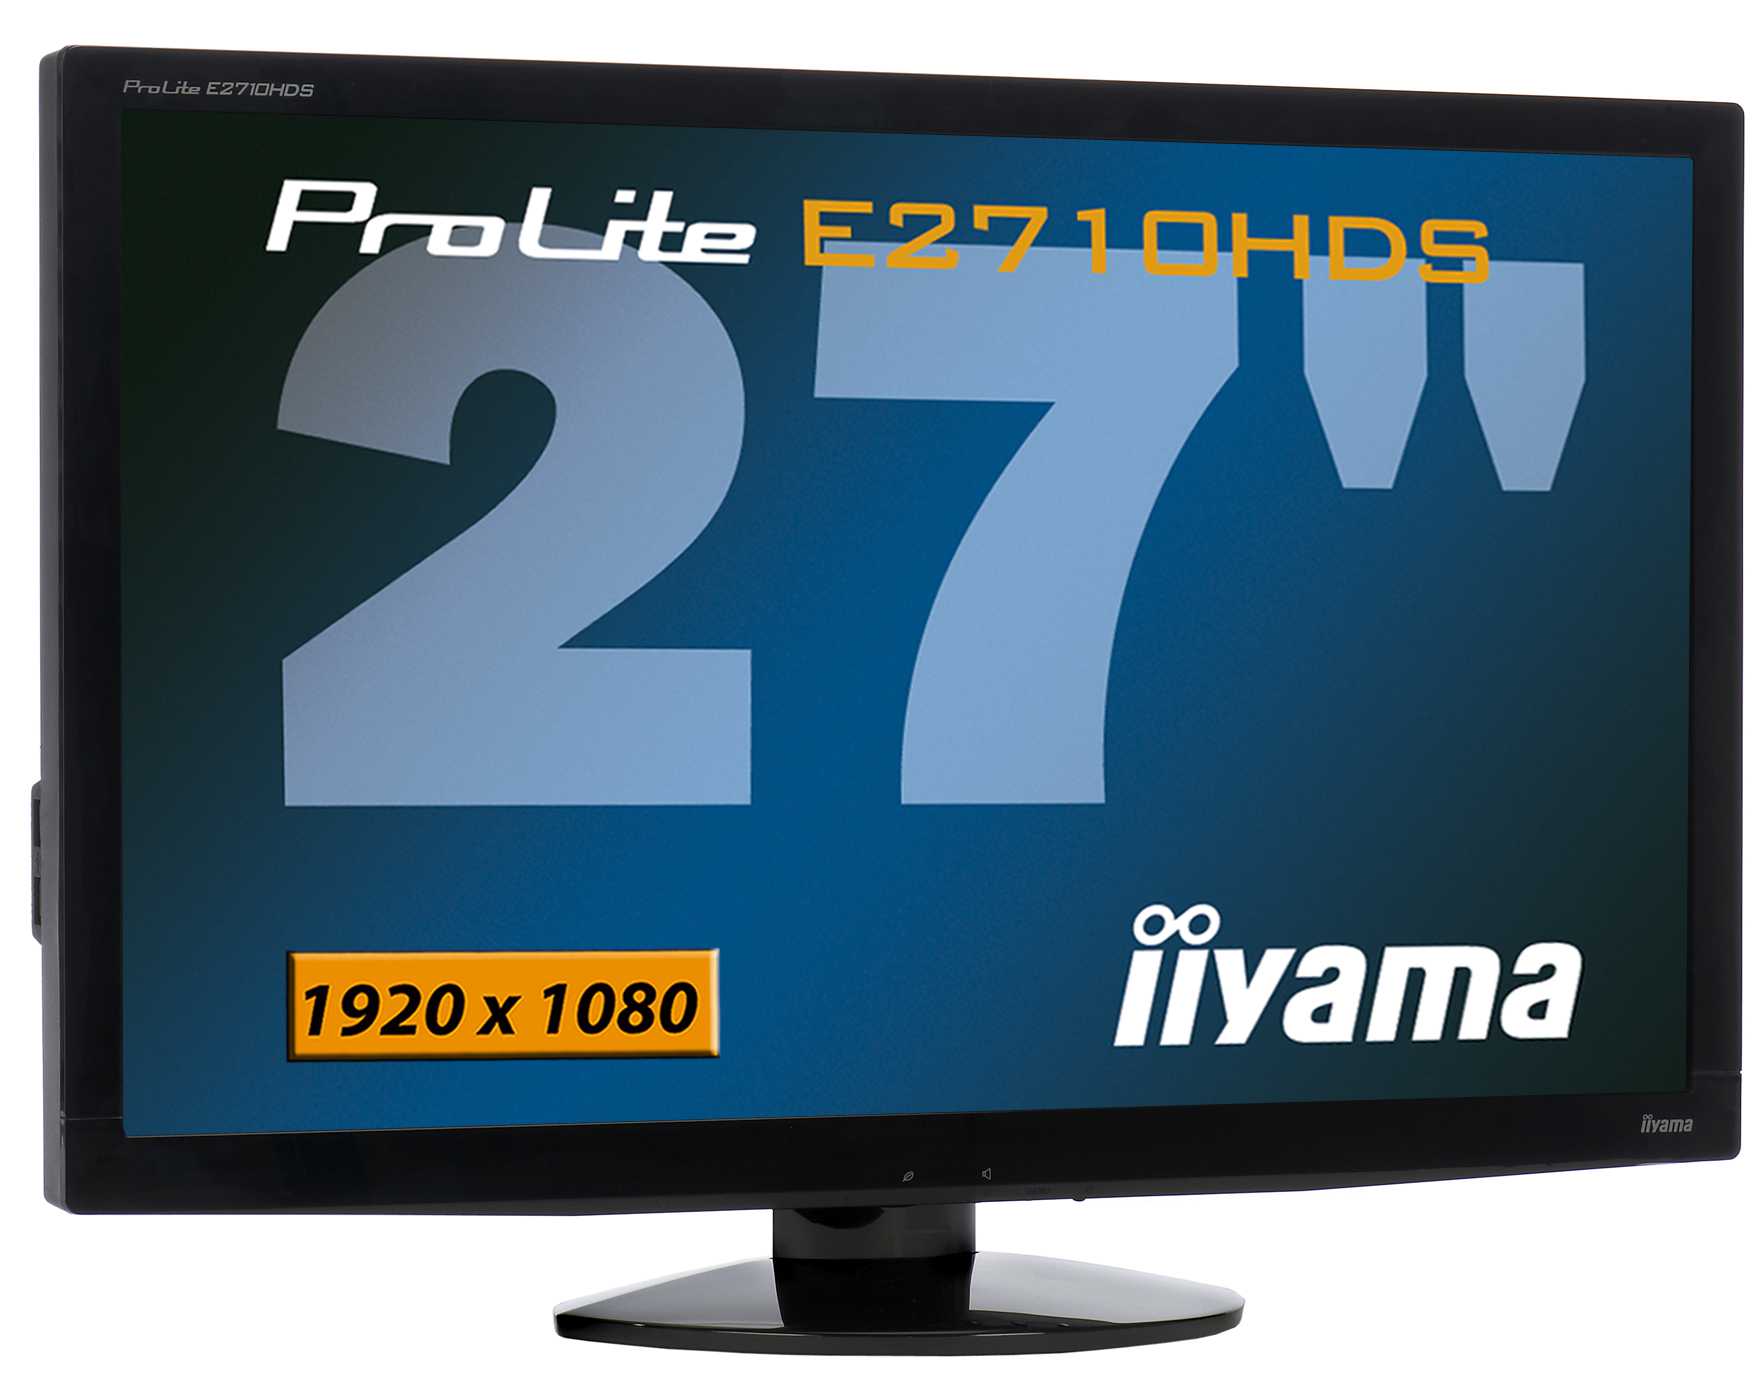 Жк монитор 23.6" iiyama e2475hds-b1 — купить, цена и характеристики, отзывы